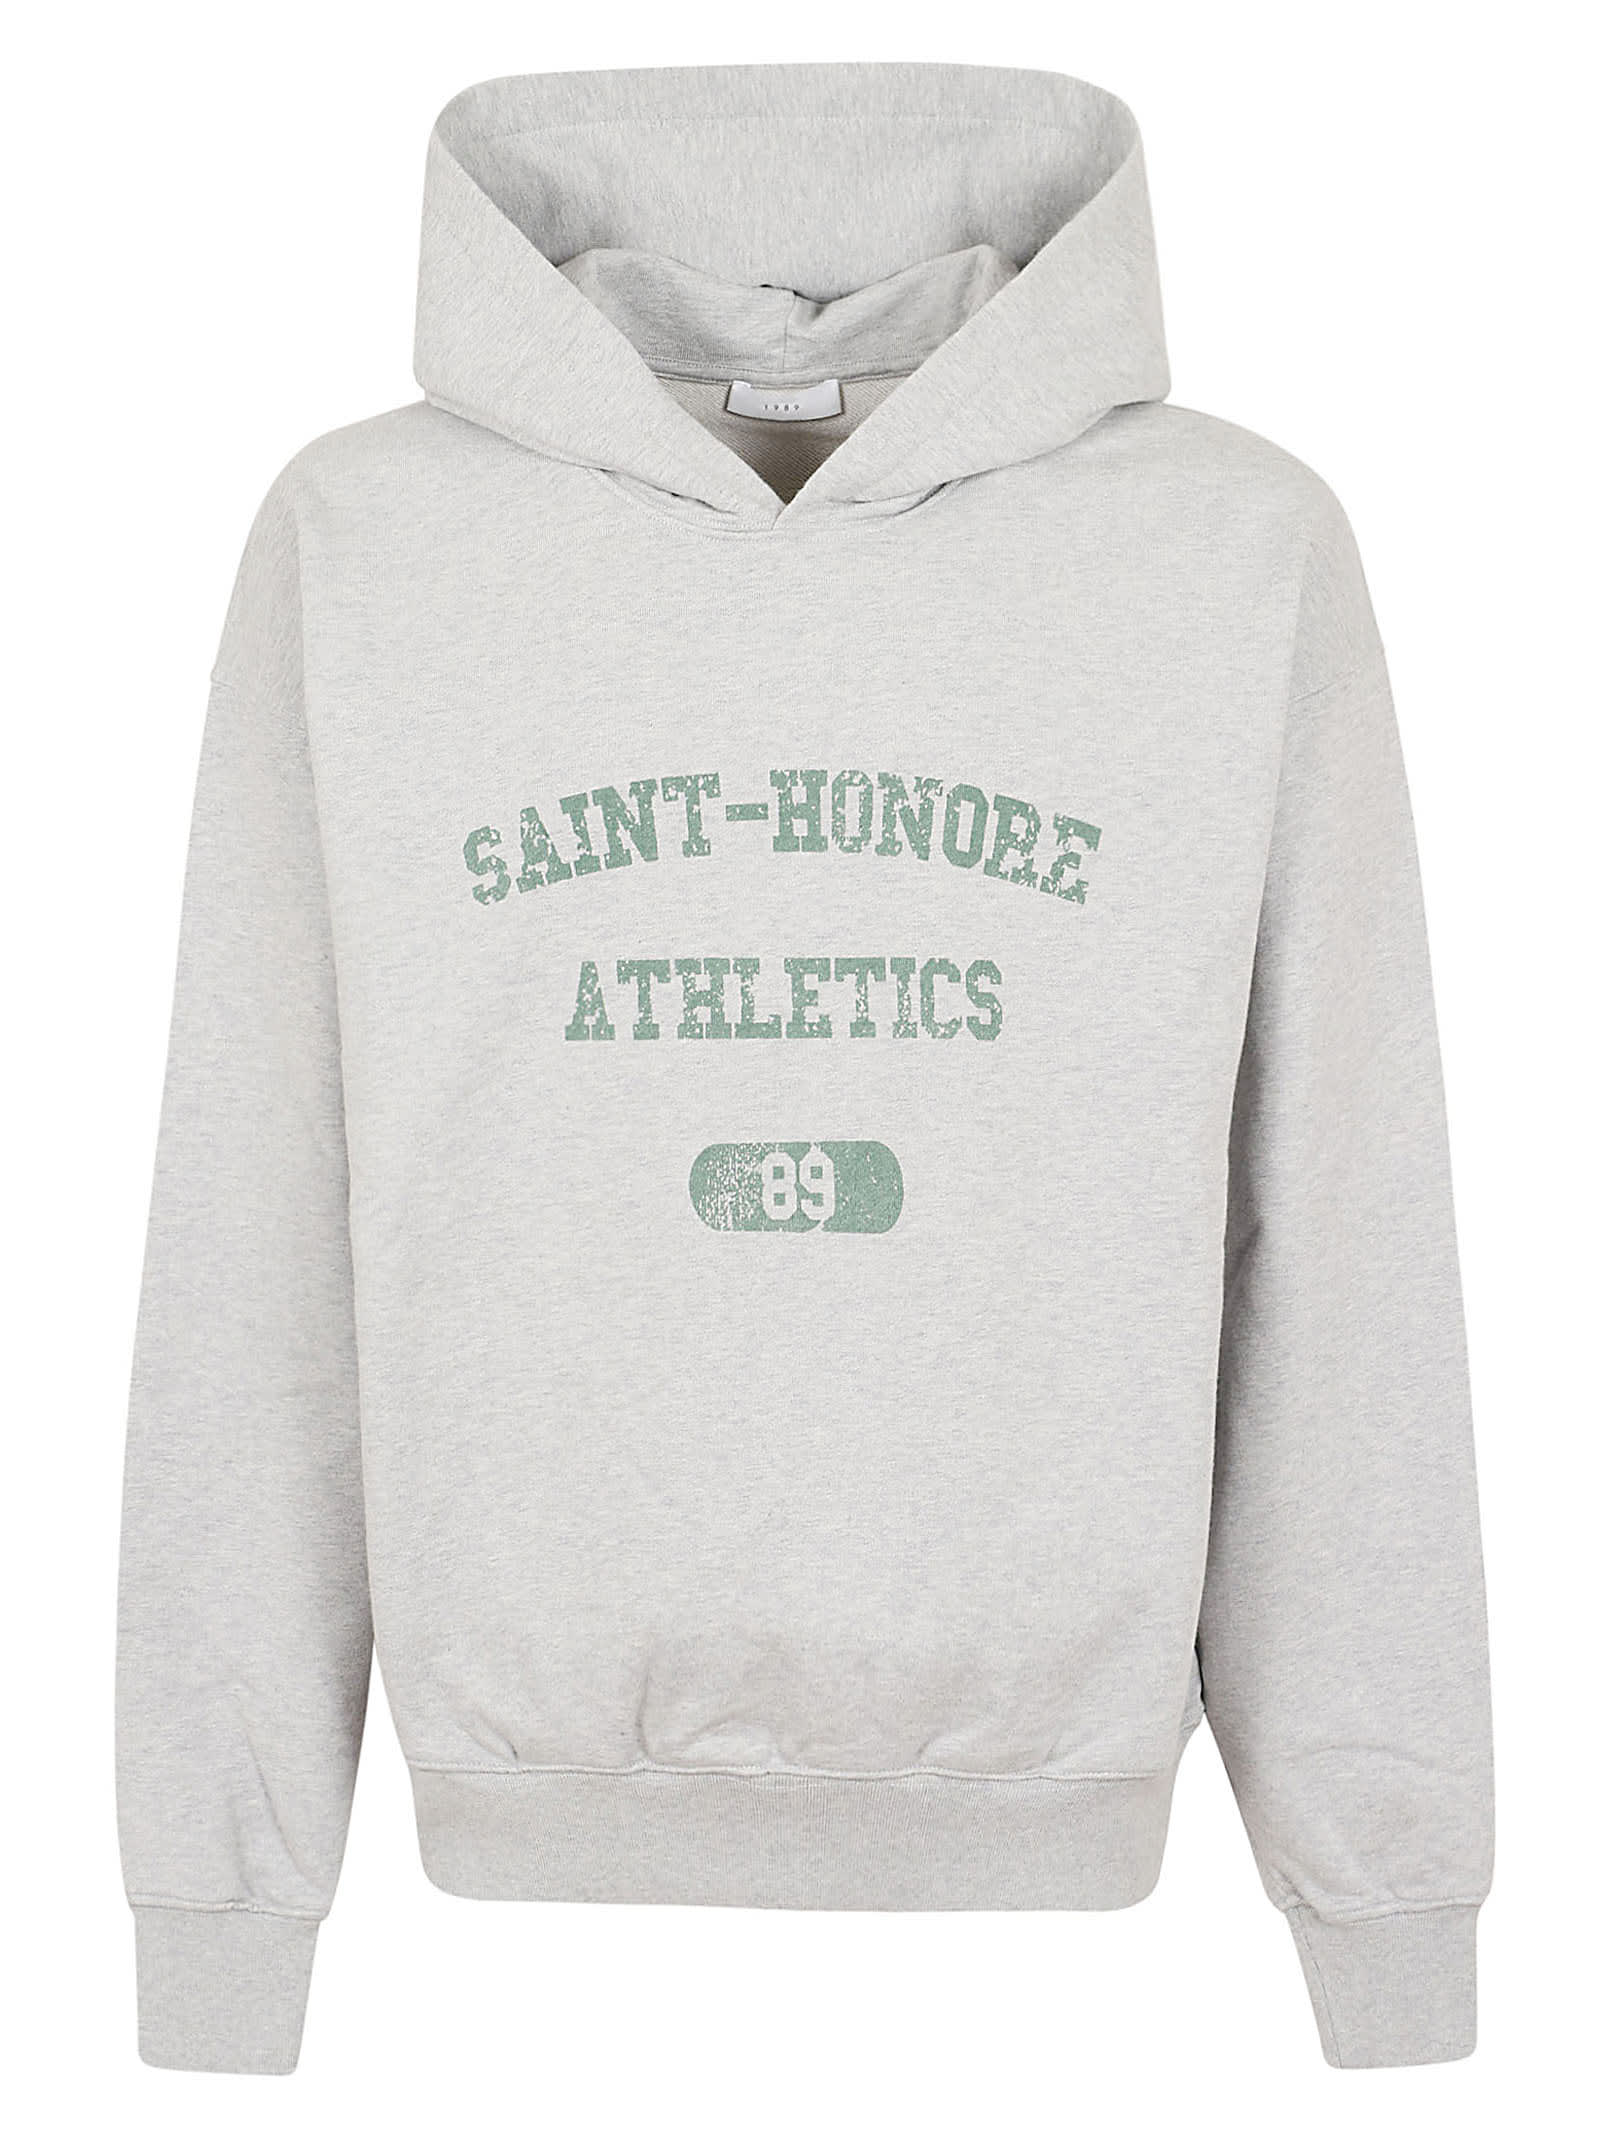 Saint Honore Athletics Distressed Hoodie